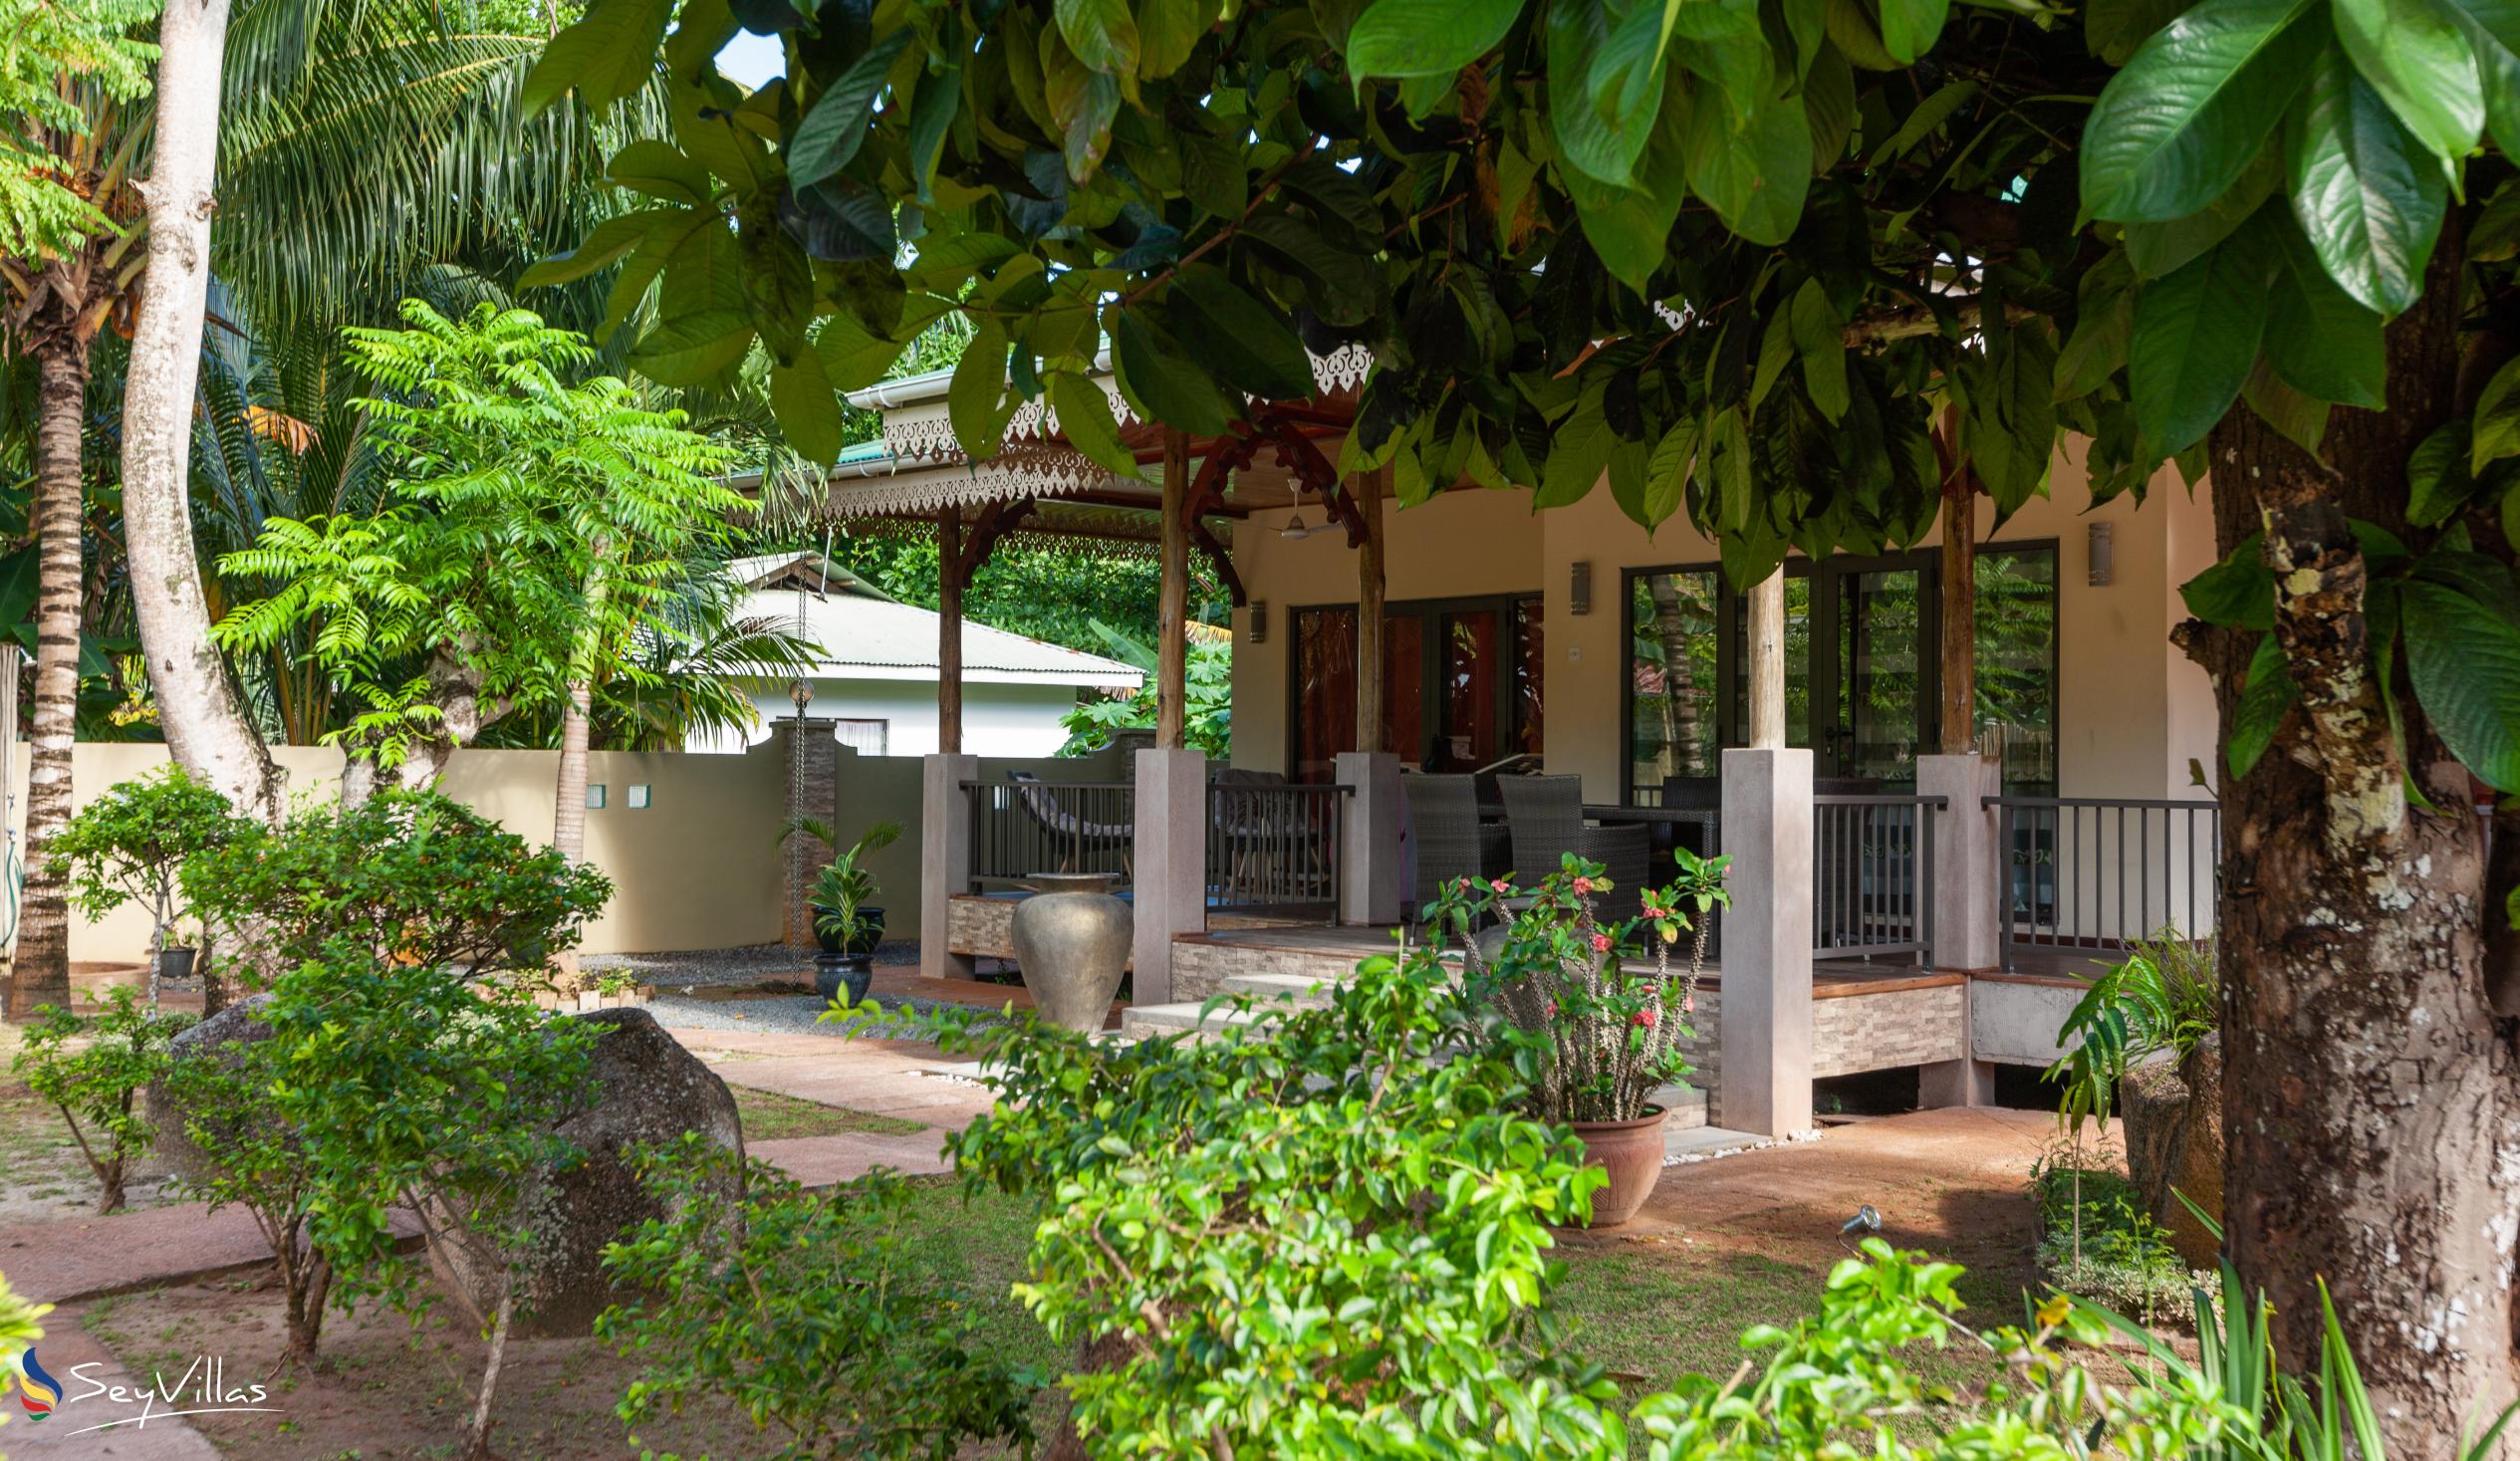 Photo 86: Casa de Leela - 2-Bedroom Luxury Bungalow with Private Plunge Pool - La Digue (Seychelles)